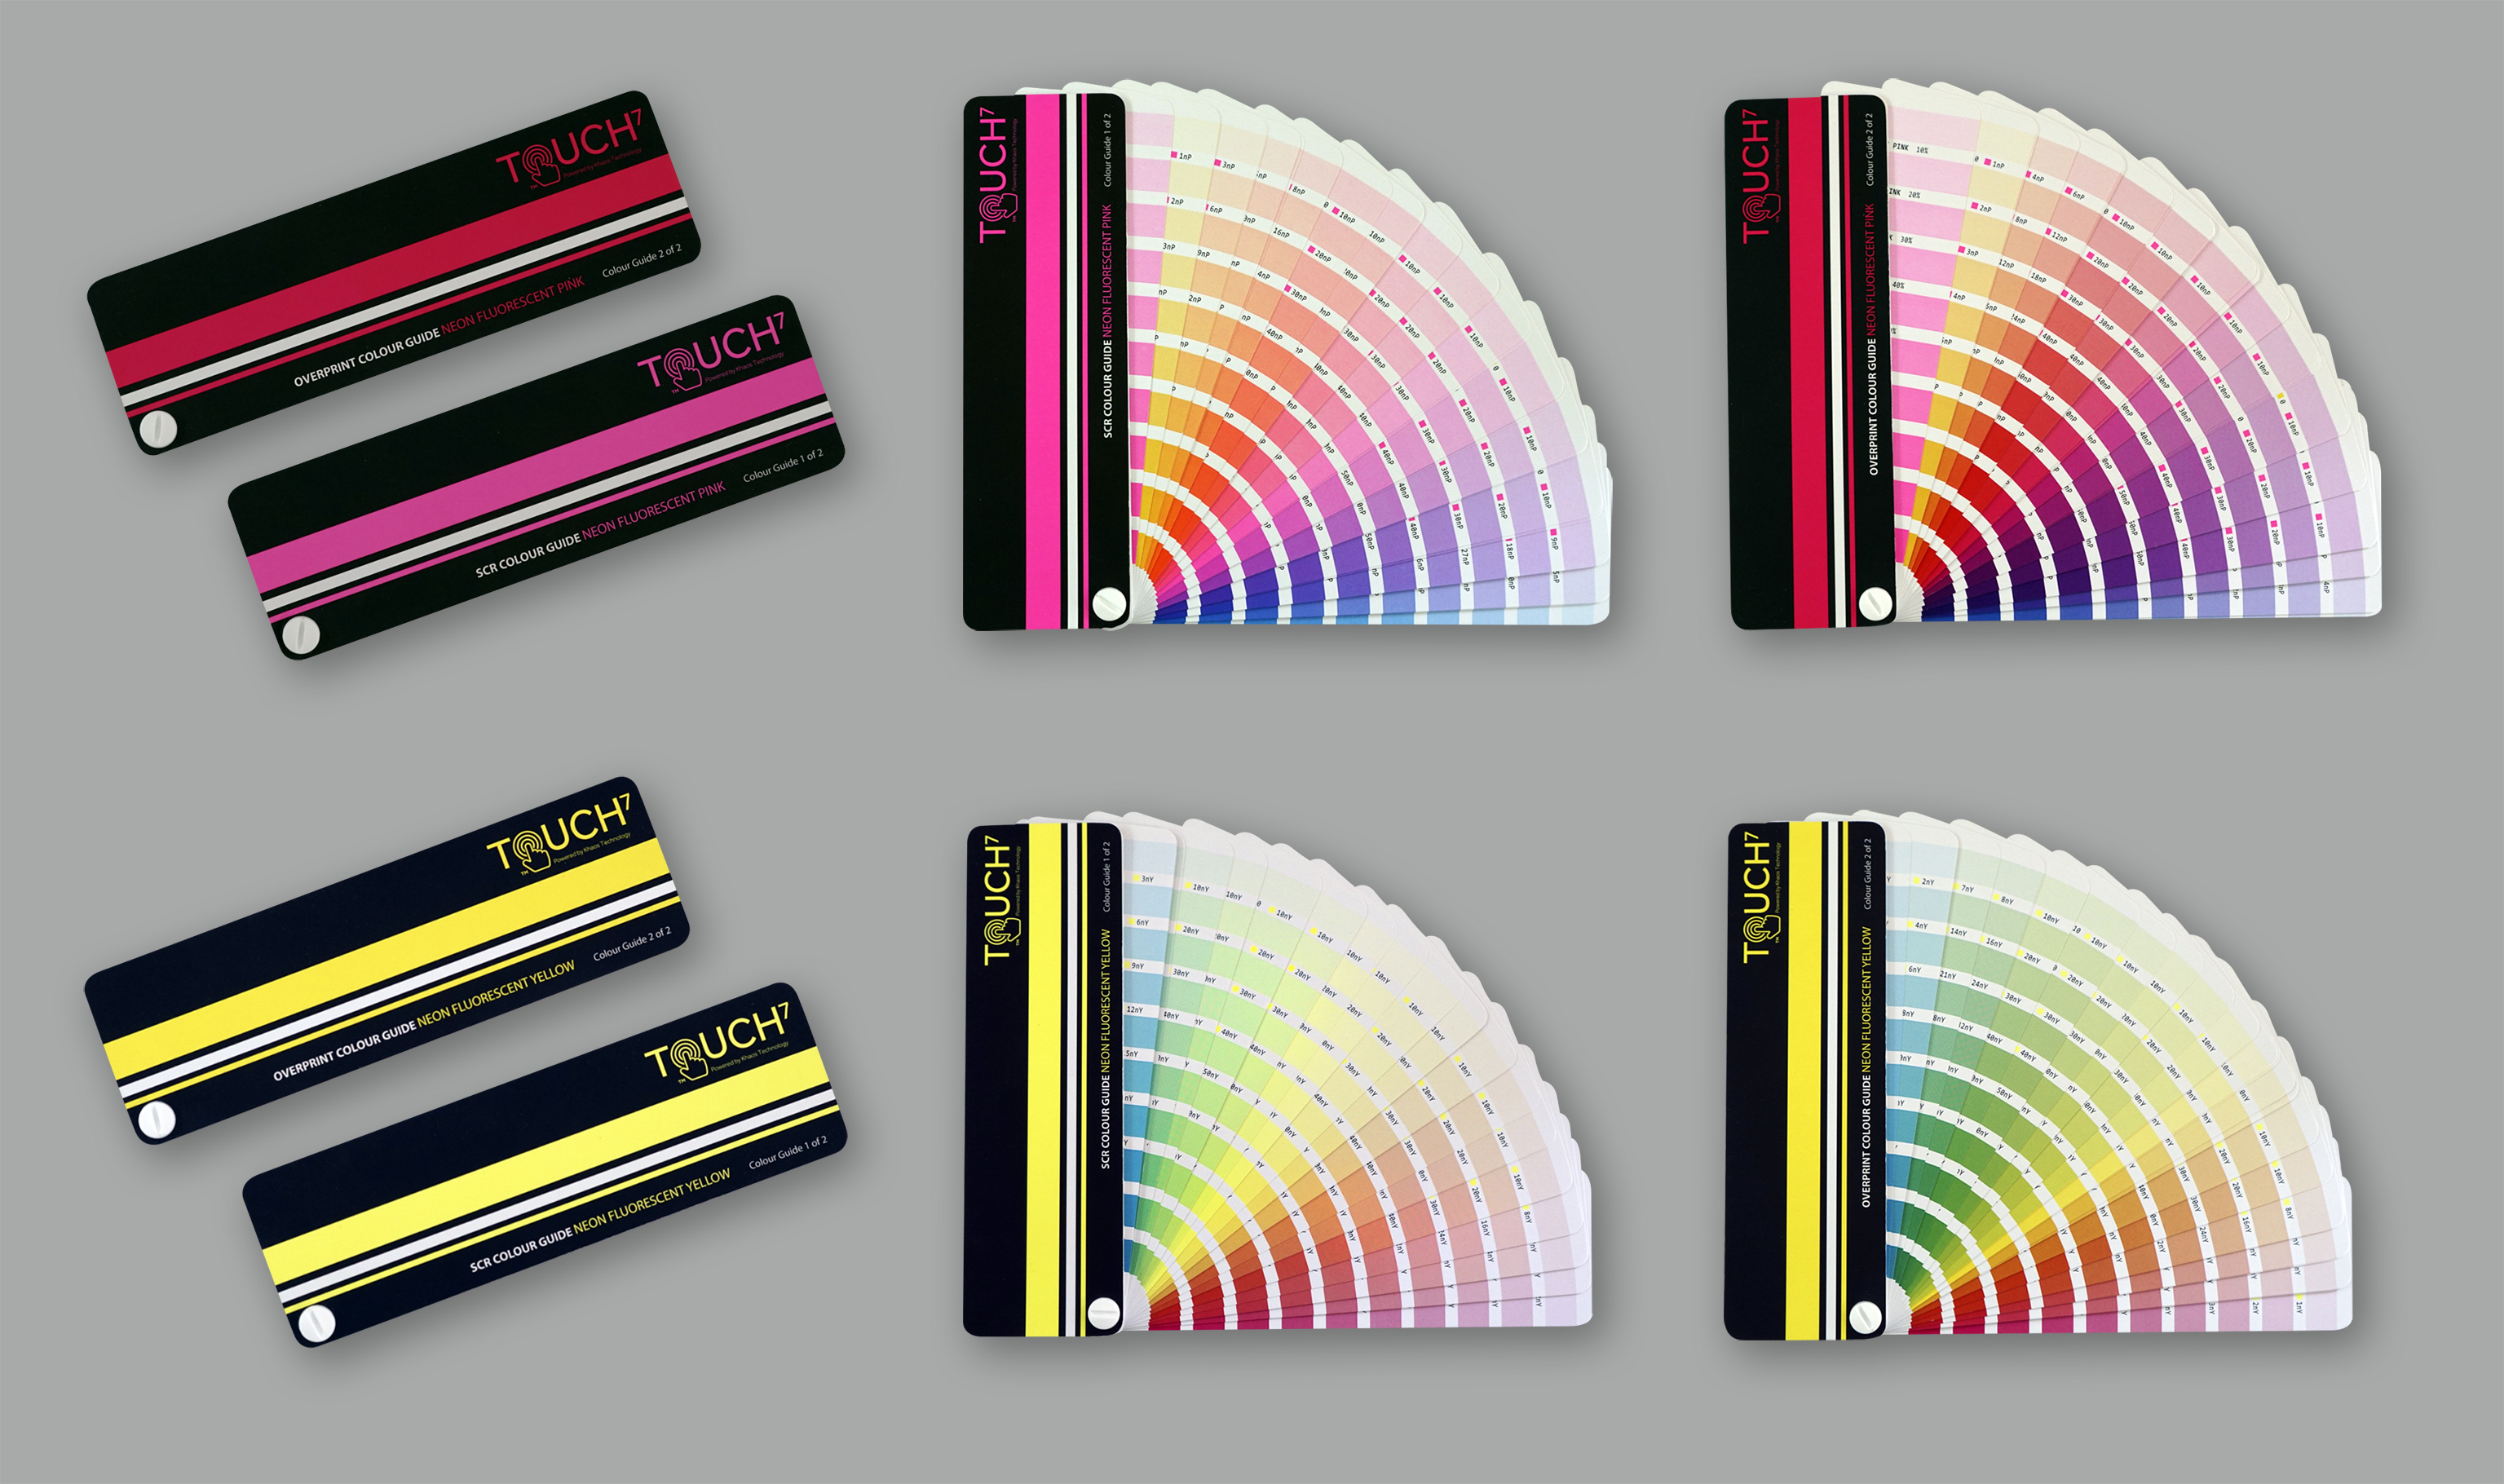 Čtyři digitální neonová barevná schémata Touch7 umožňují konzistentní reprodukci 1 520 barev.